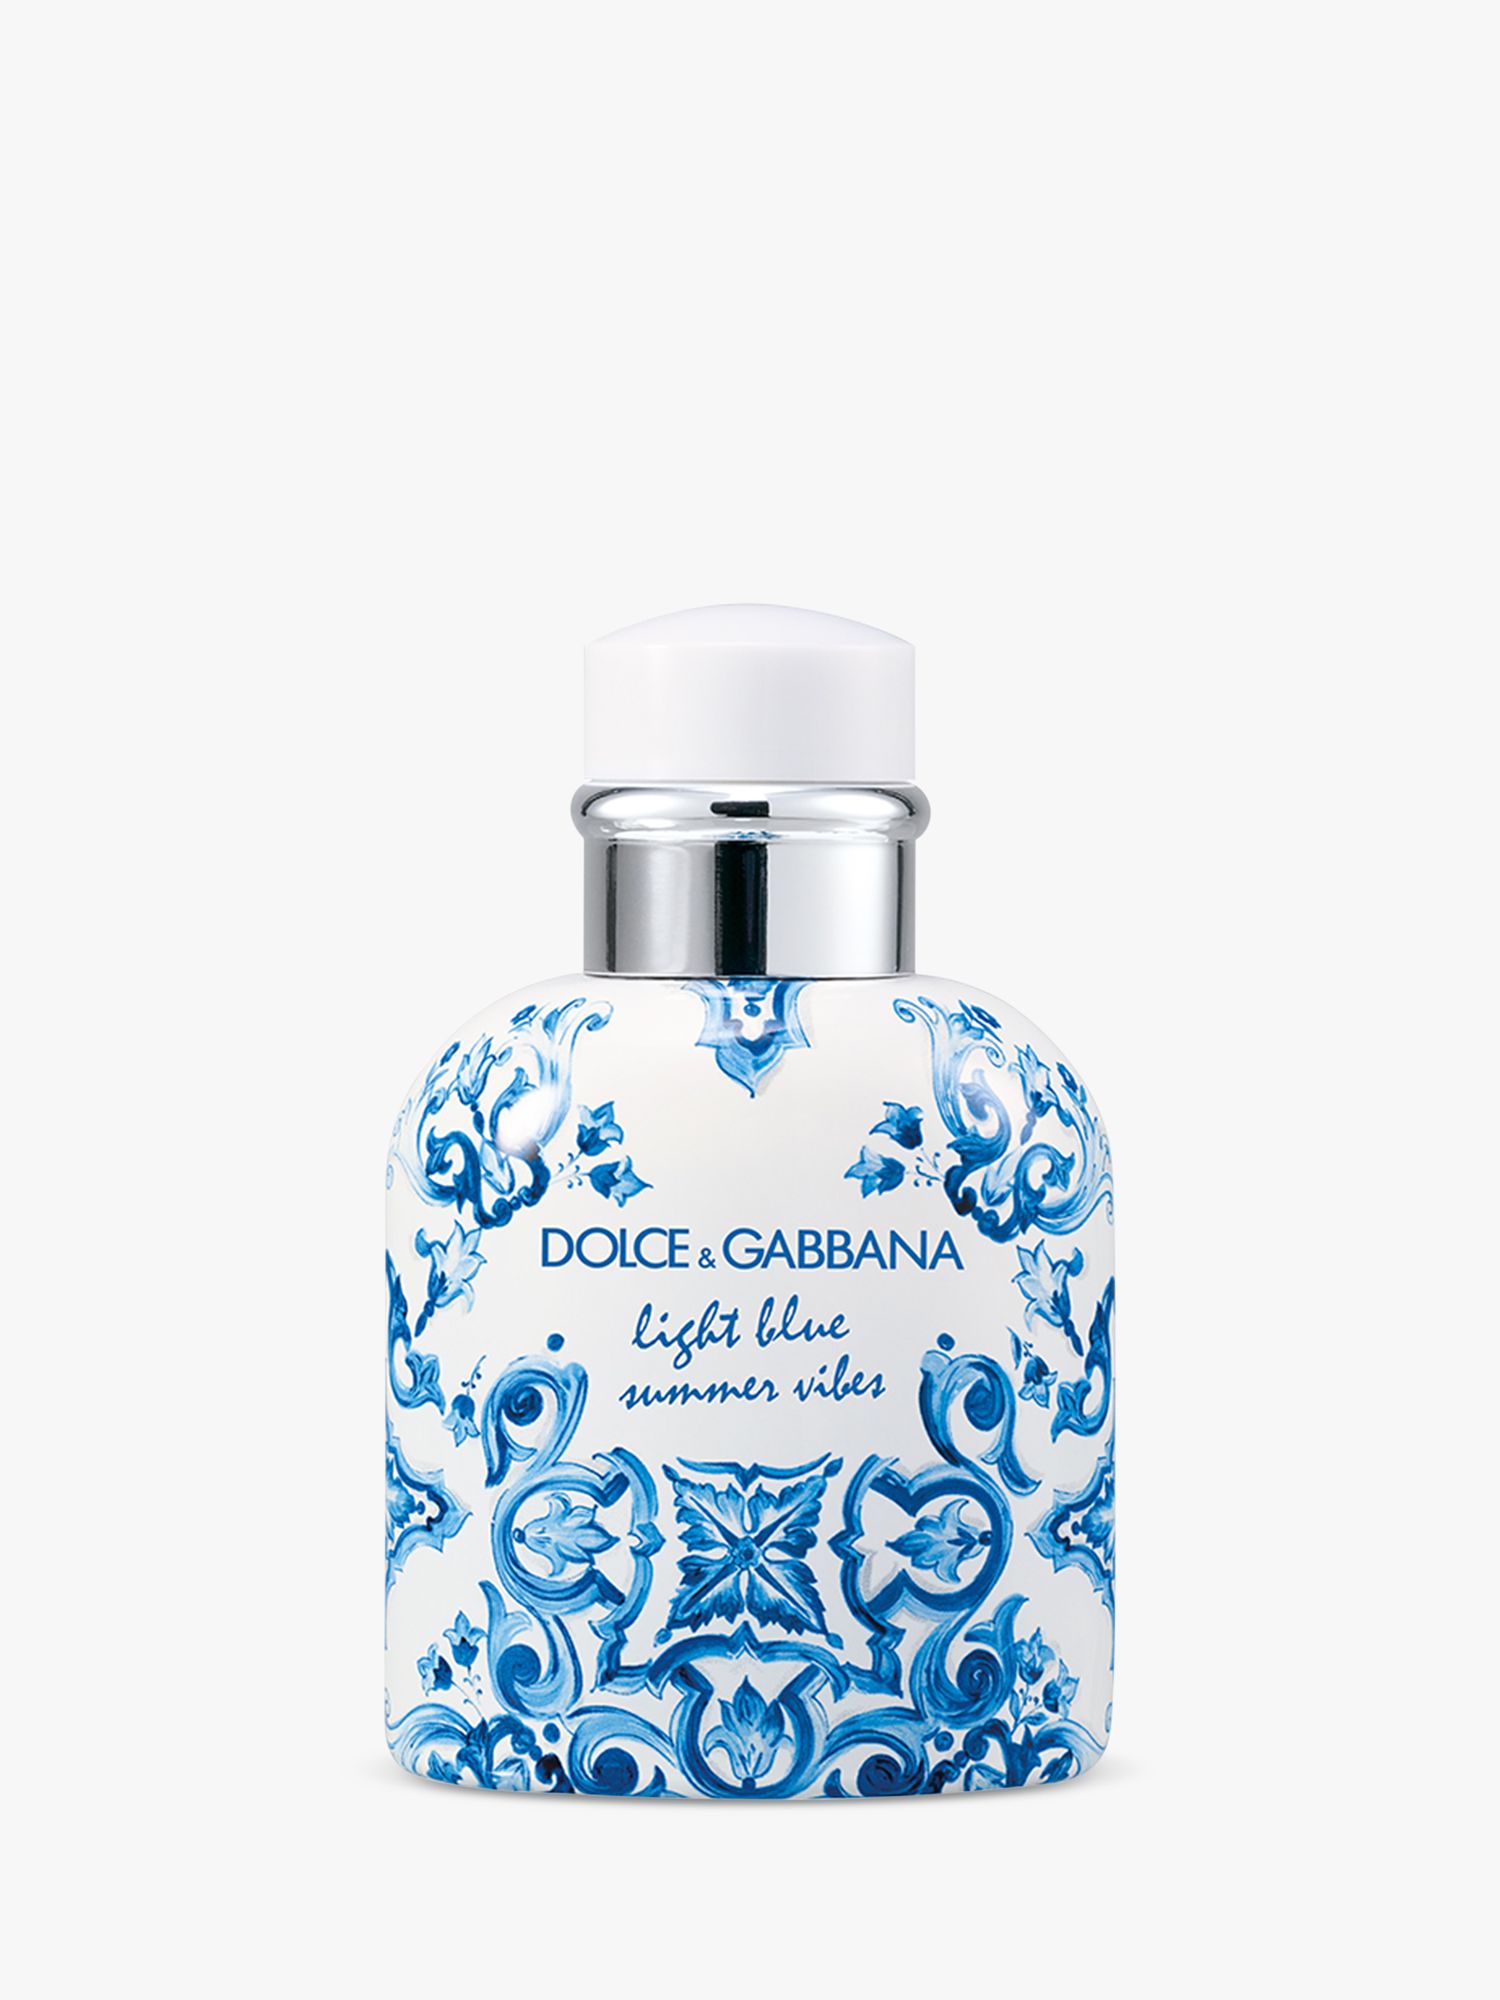 Dolce & Gabbana Light Blue Summer Vibes Pour Homme Eau de Toilette, 75ml 1